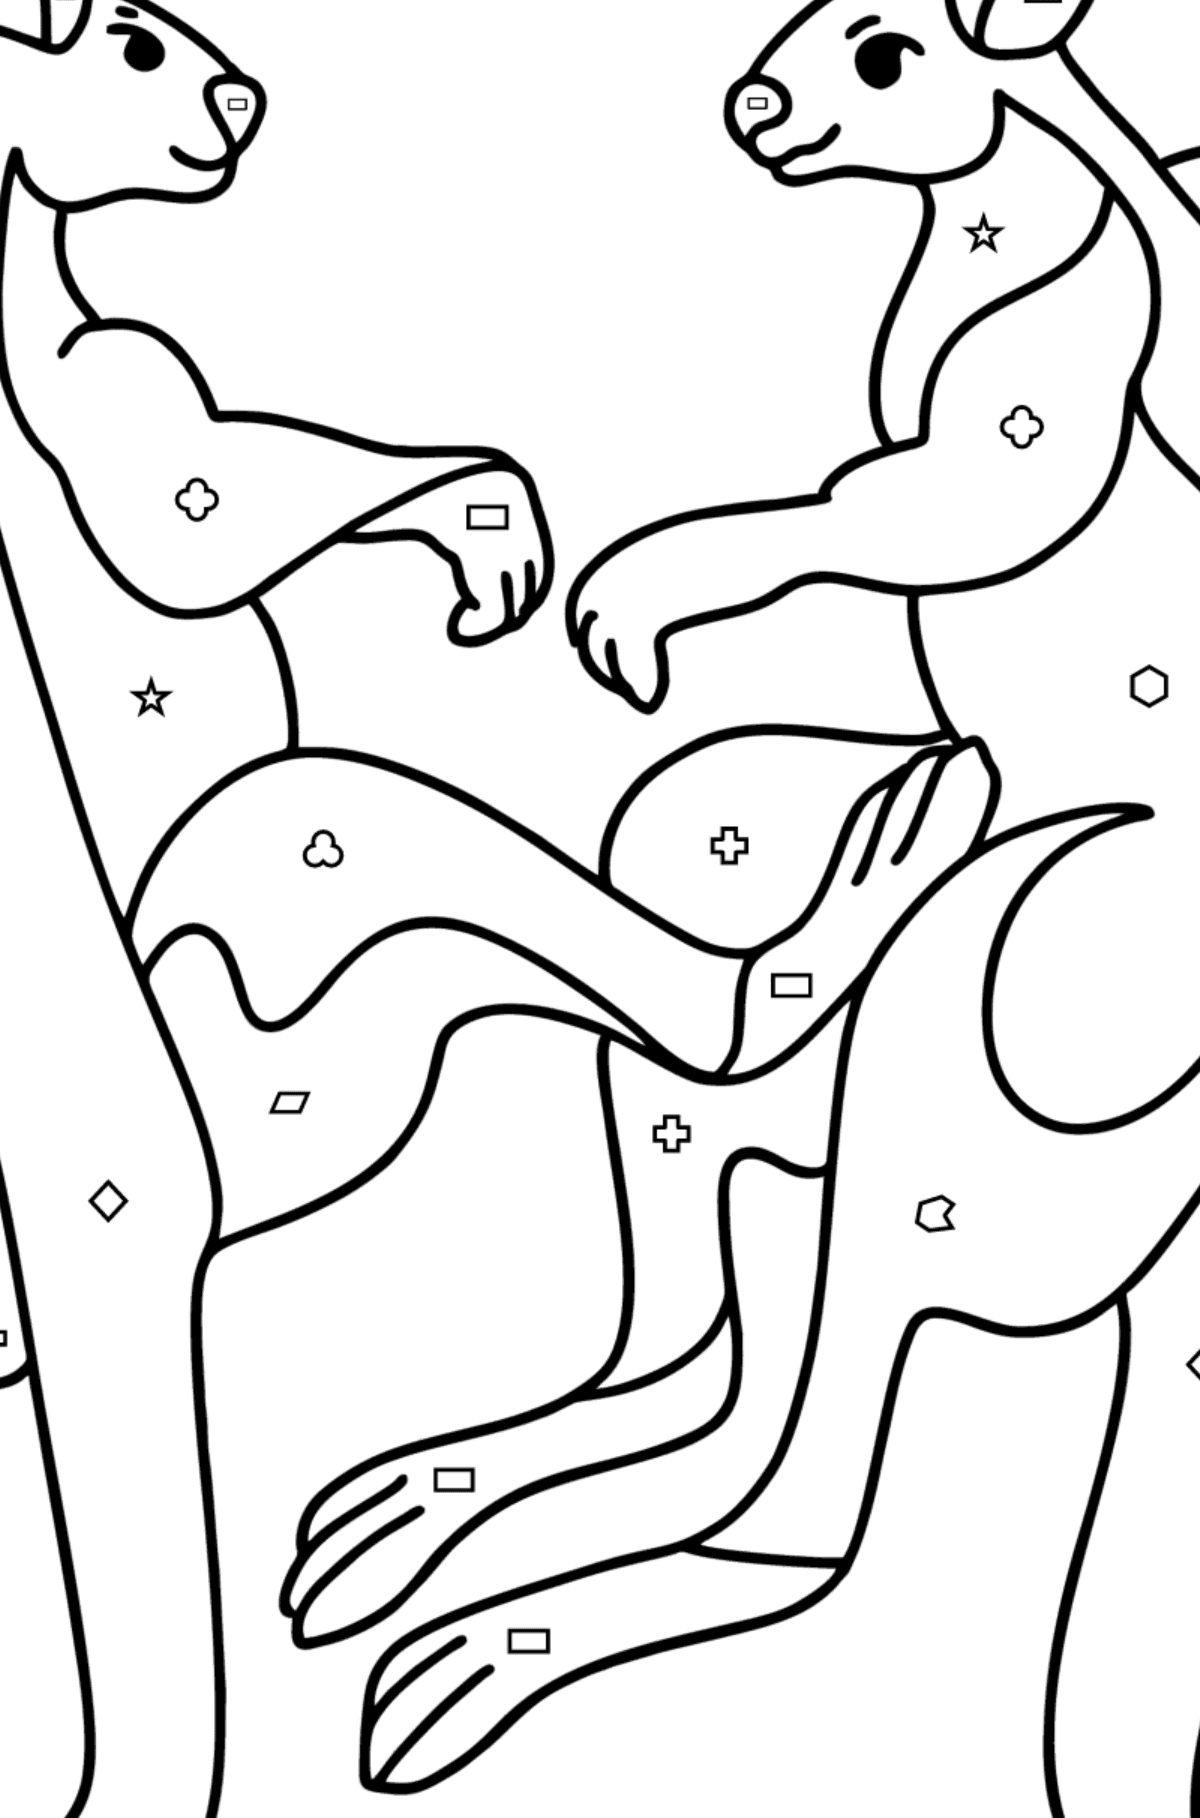 Omalovánka klokaní zápas - Omalovánka podle Geometrických tvarů pro děti